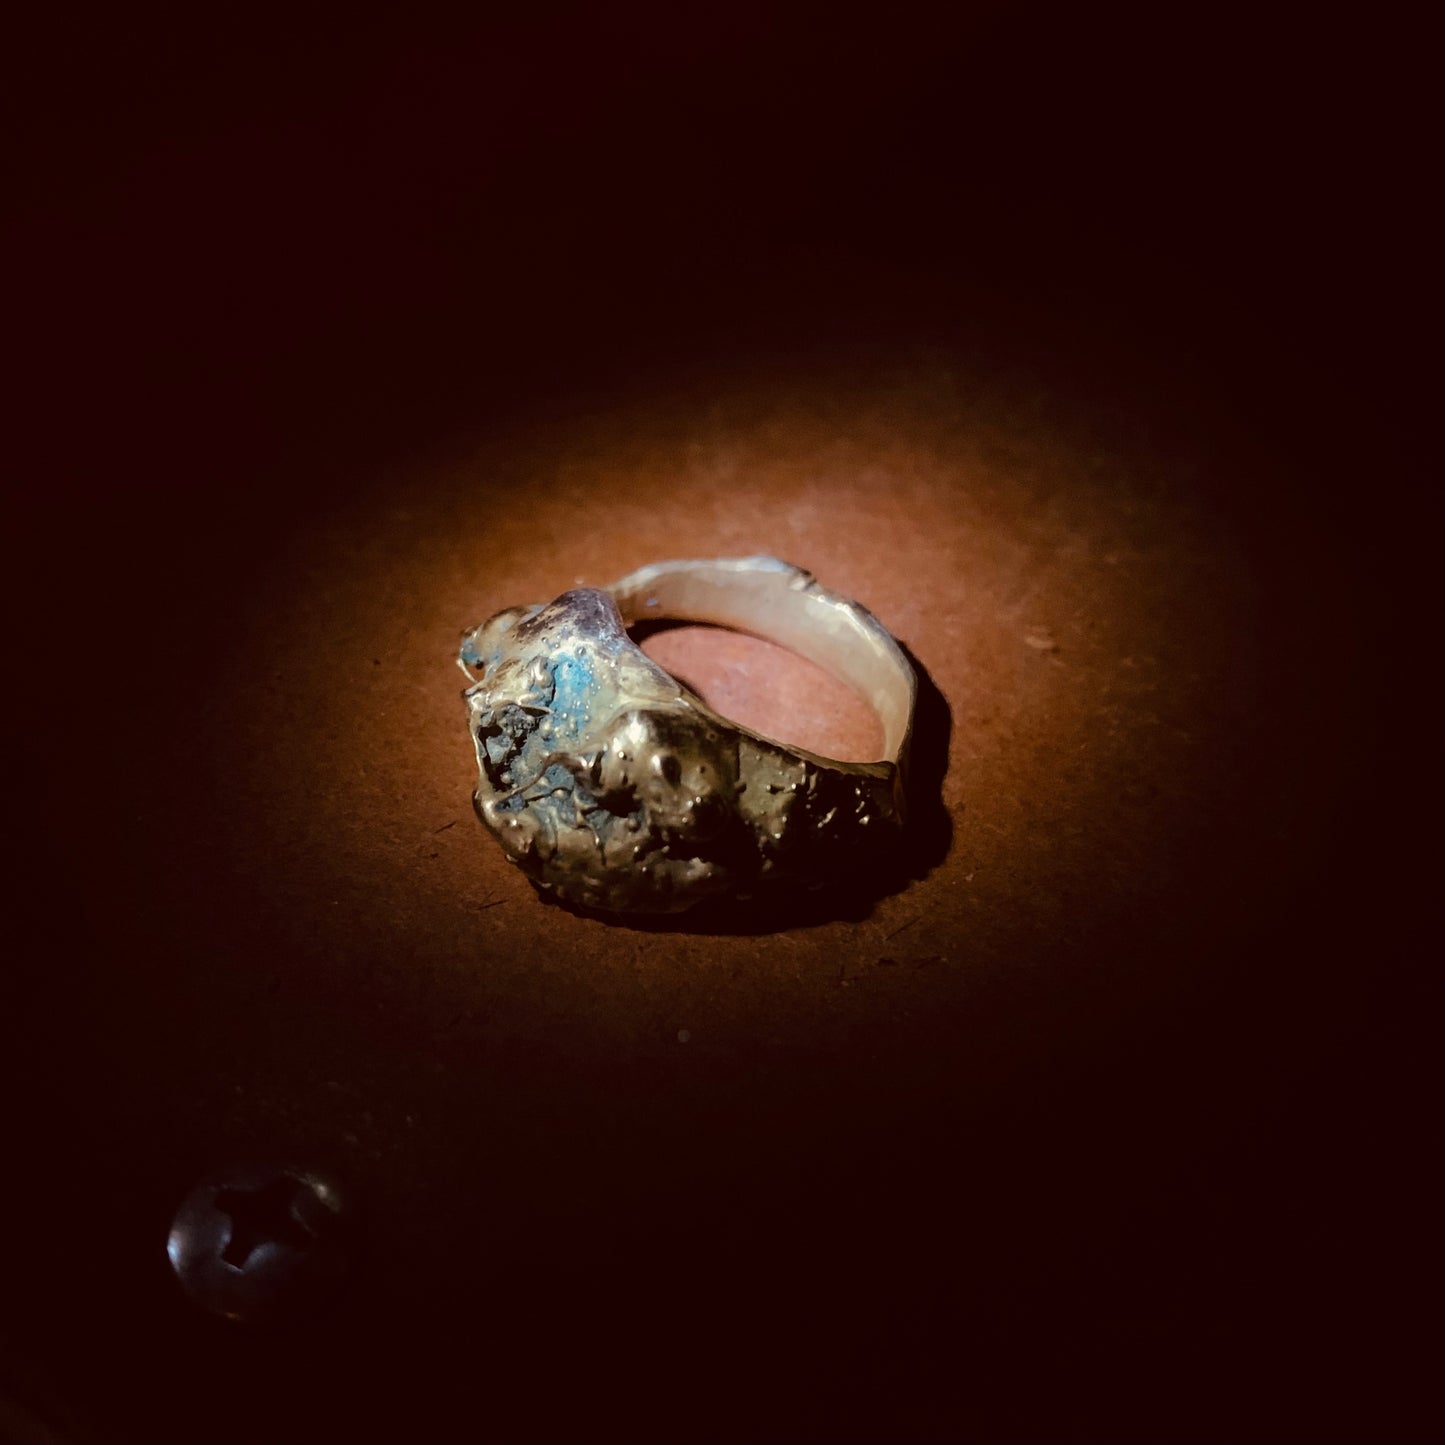 隕石鉱輪シリーズ  “Sliding planet” 肉眼の領域を超えた初めての作品